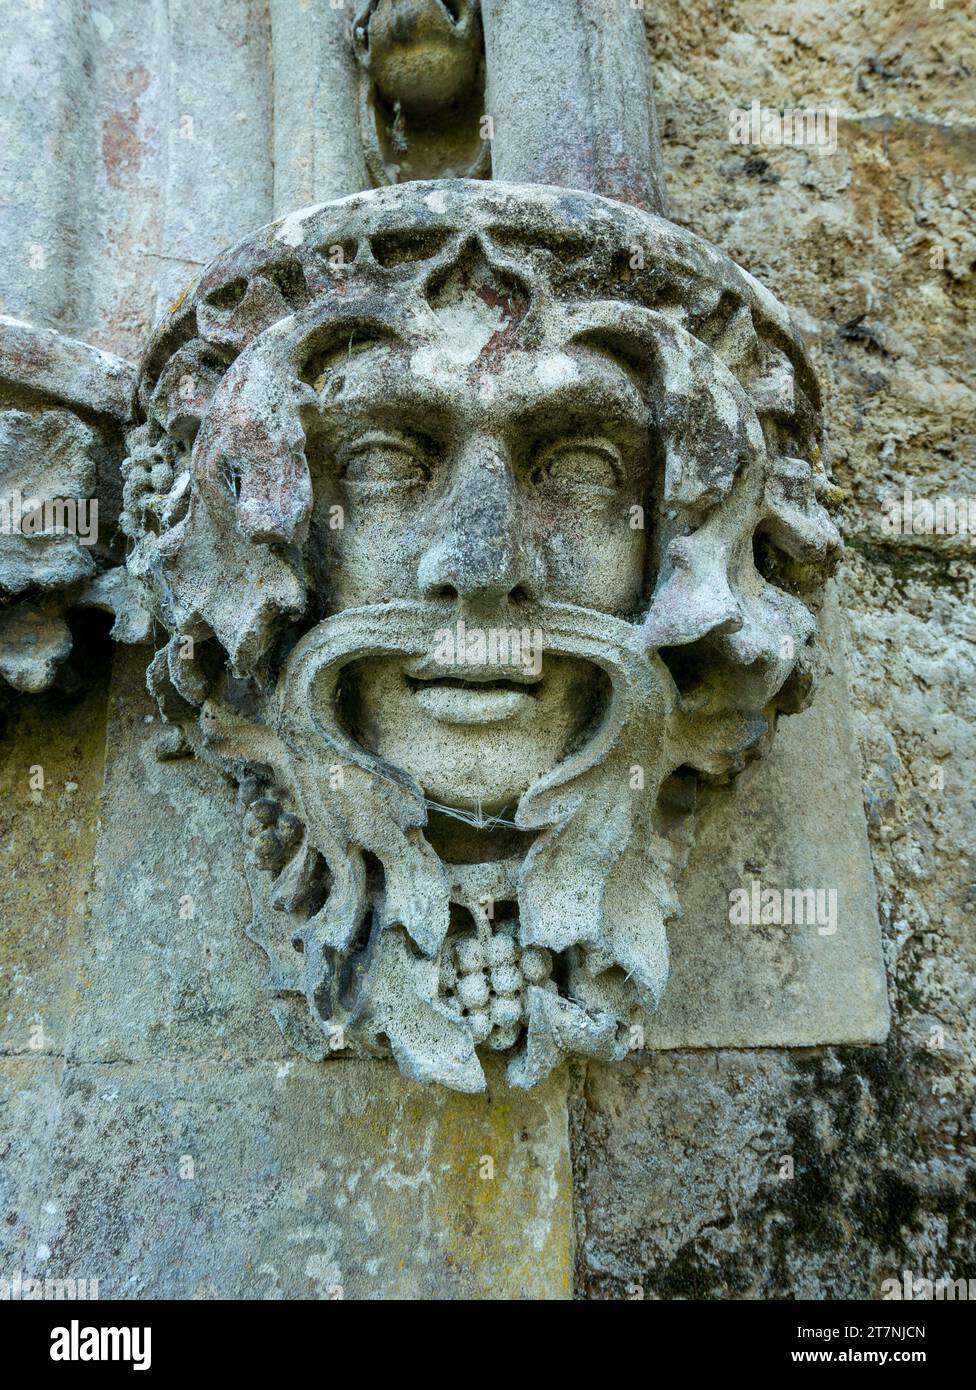 Vue détaillée de la sculpture en pierre décorative / maçonnerie en pierre grotesque vert homme visage caricature Little Dalby Church, Leicestershire, Angleterre, Royaume-Uni Banque D'Images